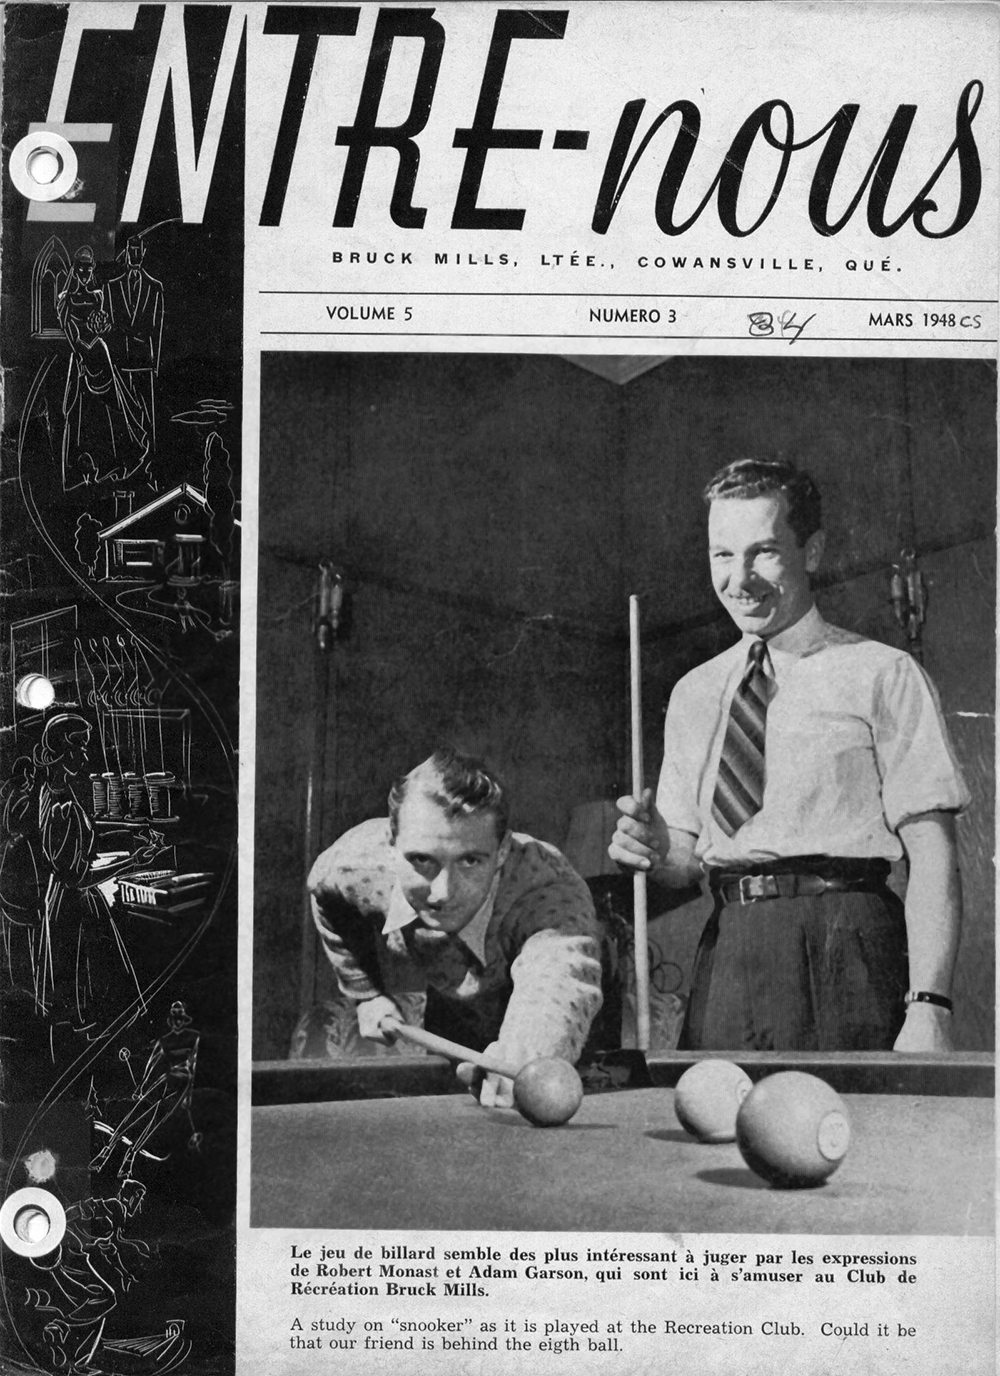 Page couverture du magazine Entre-Nous, Vol. 5 no 3, mars 1948 avec une photo de 2 hommes qui jouent au billard.